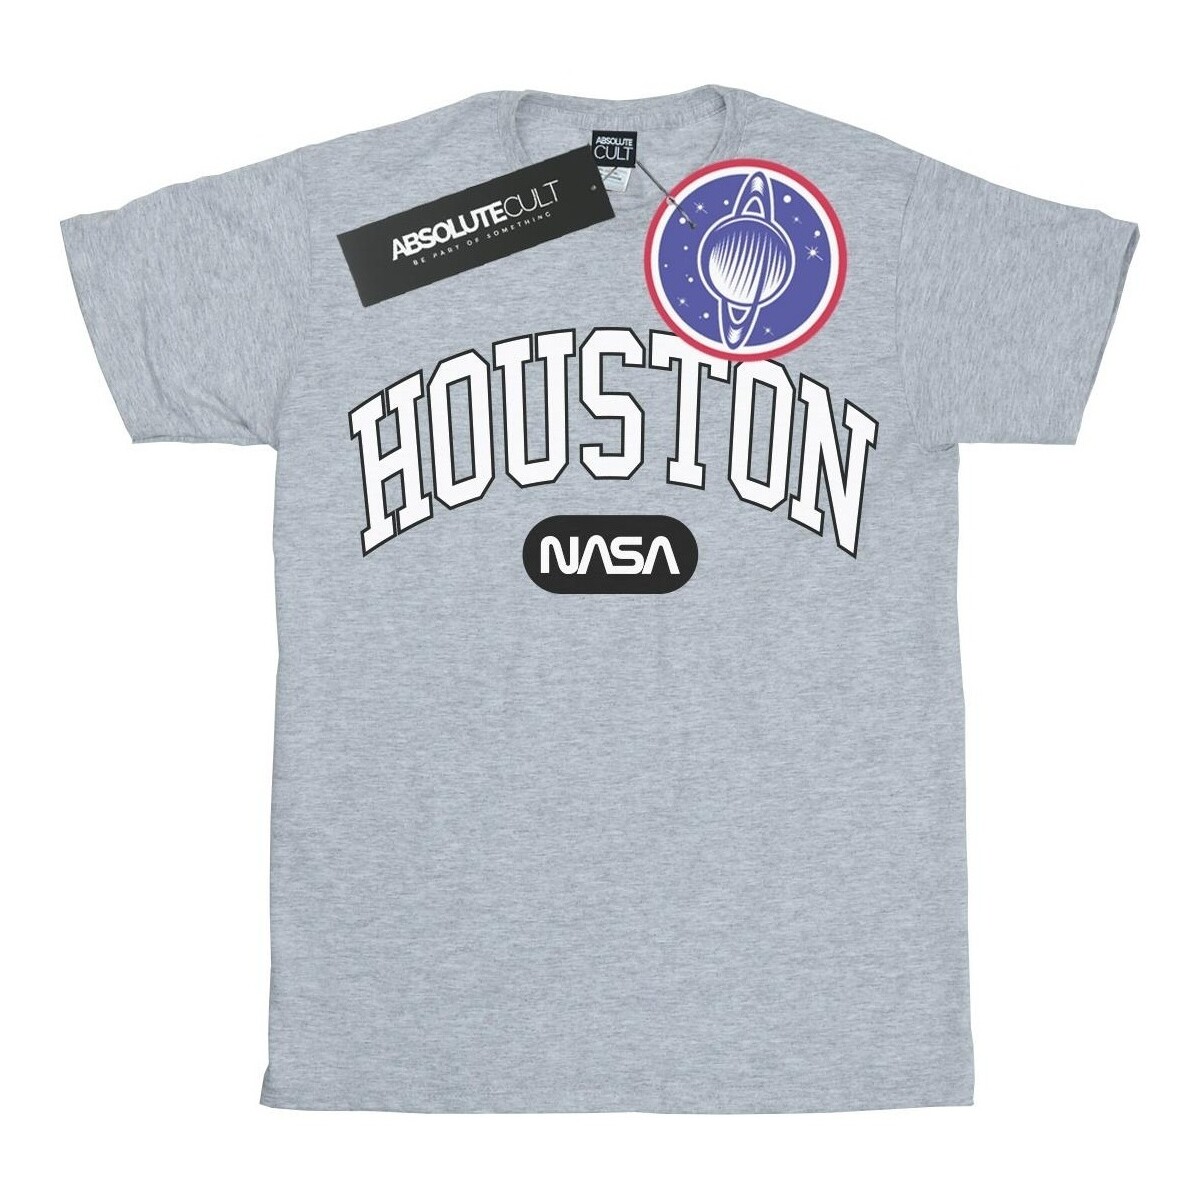 Vêtements Femme T-shirts manches longues Nasa Houston Collegiate Gris